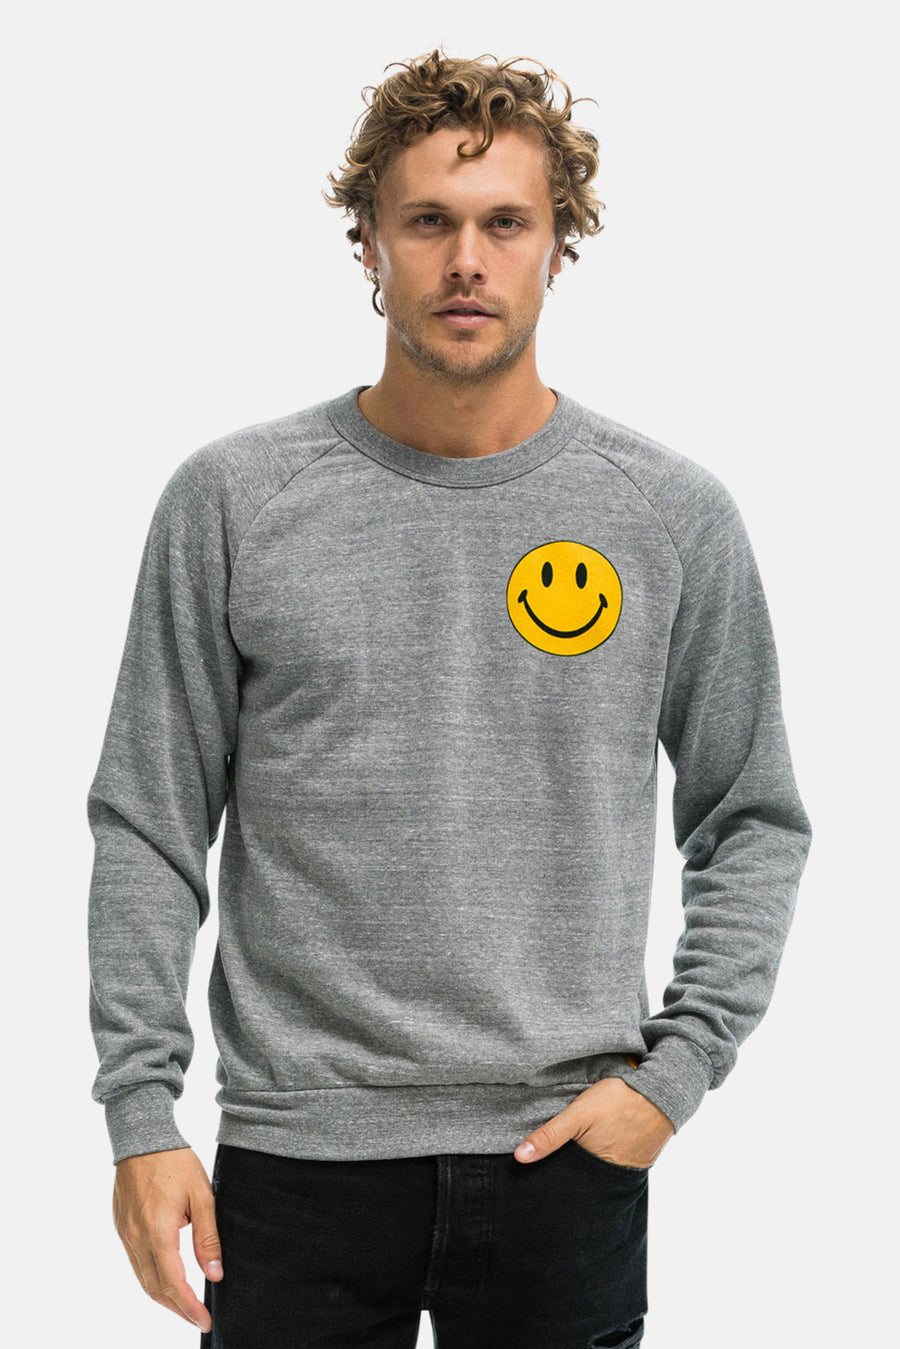 Smiley 2 Sweatshirt Heather Grey - blueandcream